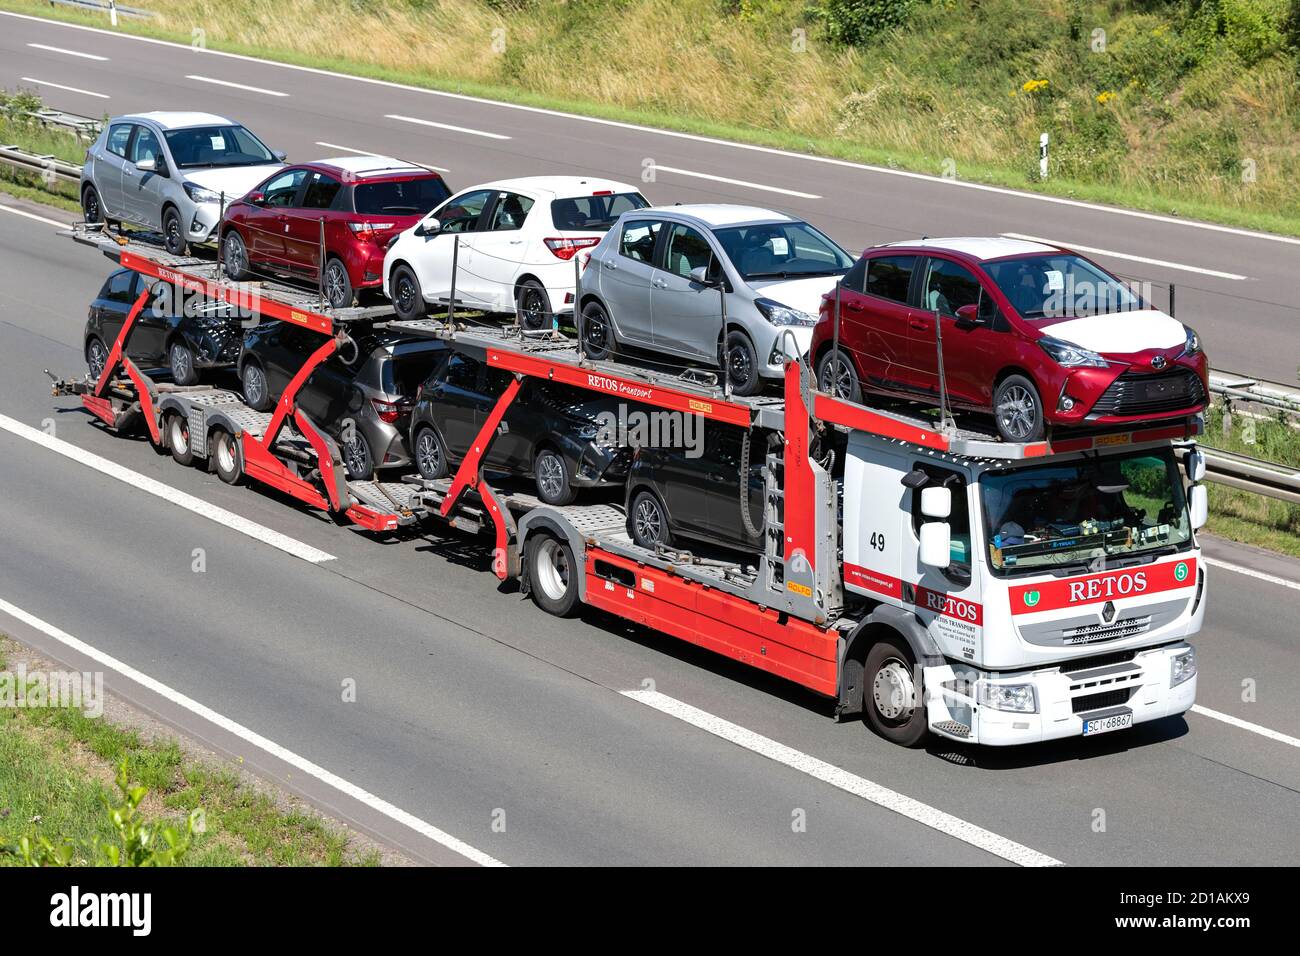 coches-renault-retos-carry-camion-en-la-autopista-2d1akx9.jpg